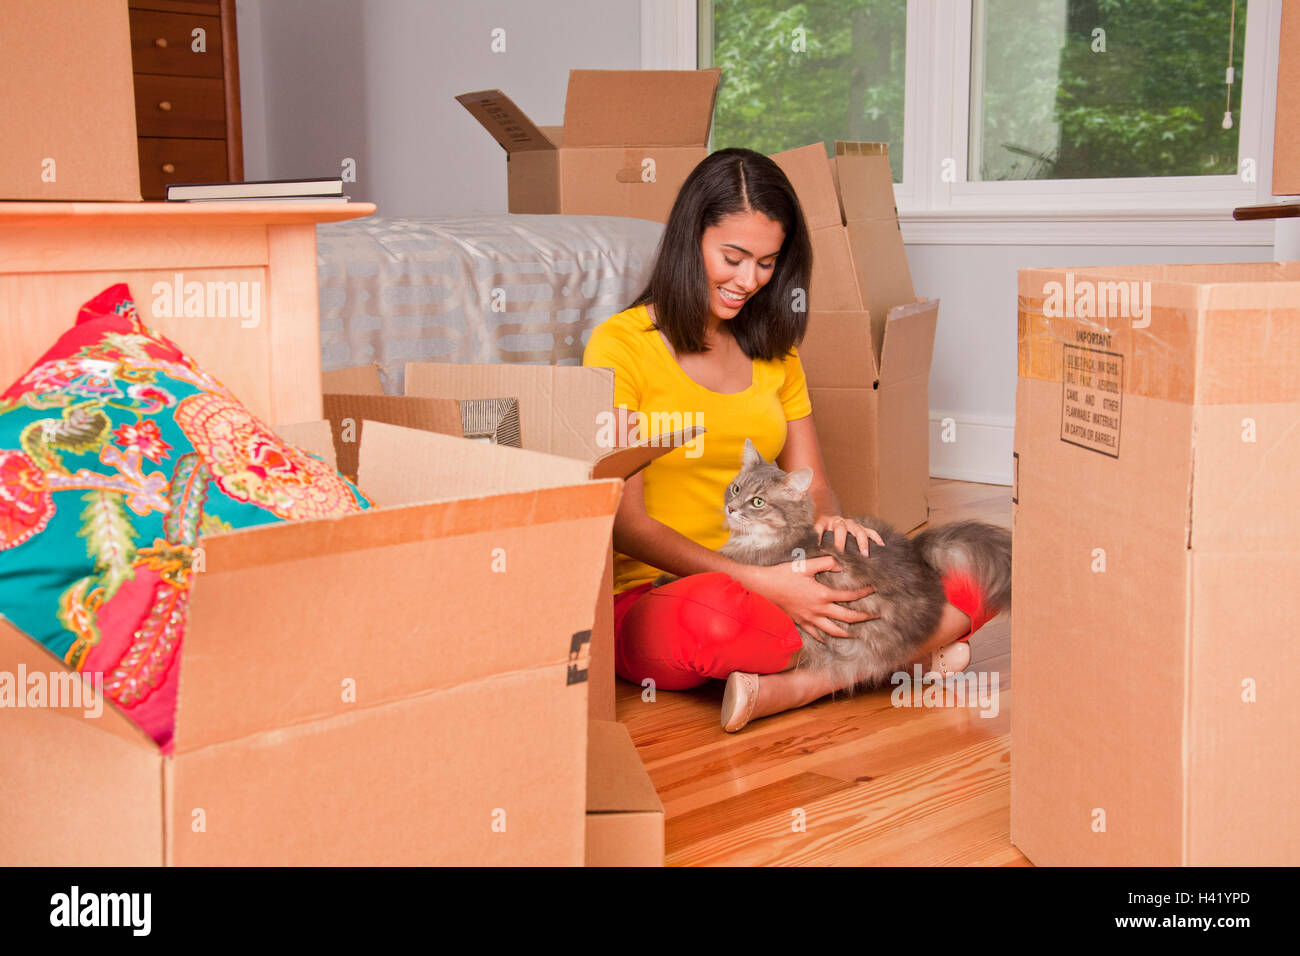 Hispanic woman sitting on floor petting cat près de cartons de déménagement Banque D'Images